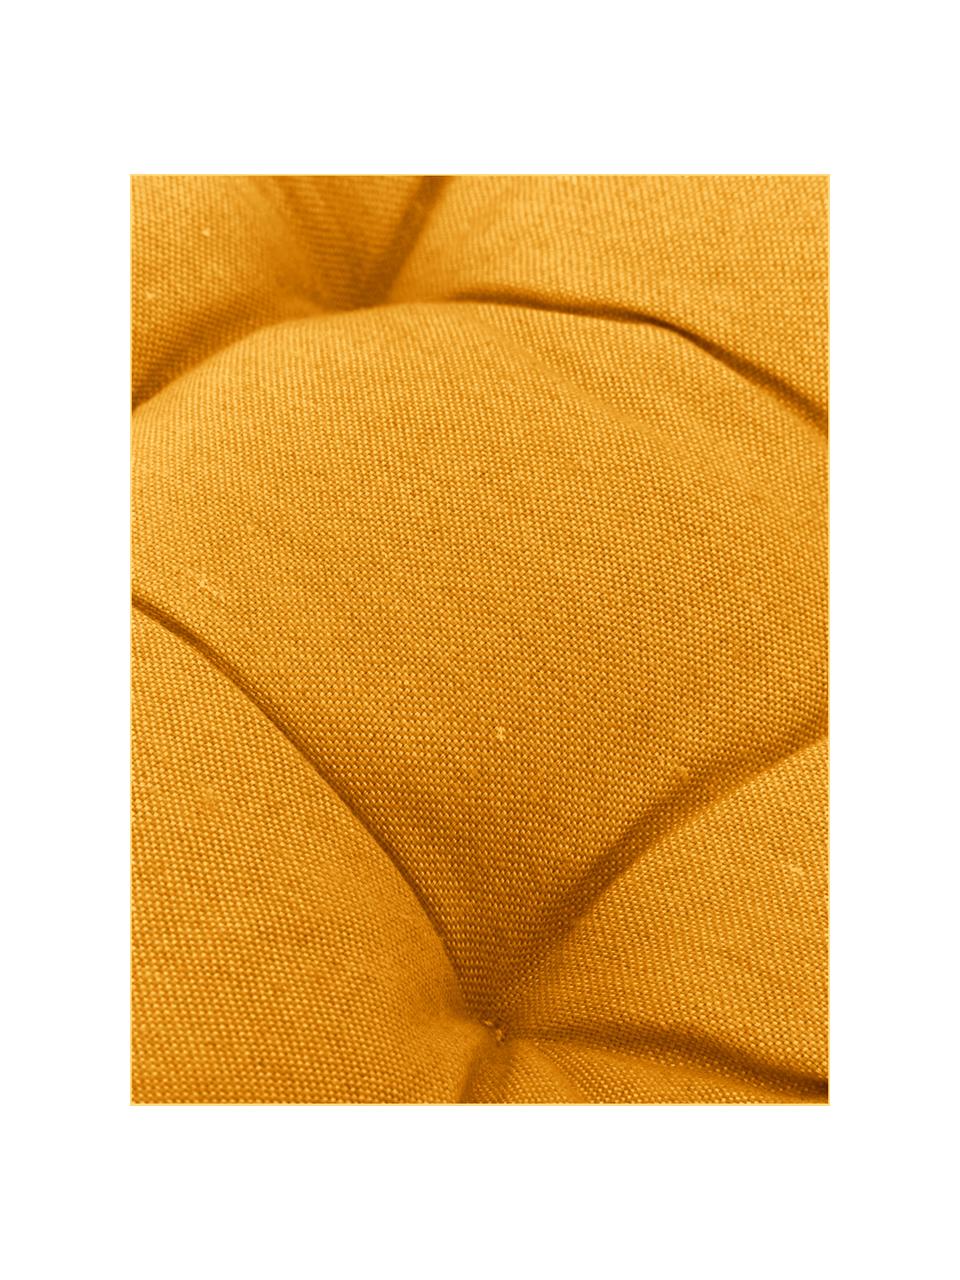 Cuscino sedia giallo Panama, Rivestimento: 50% cotone, 45% poliester, Giallo, Larg. 45 x Lung. 45 cm